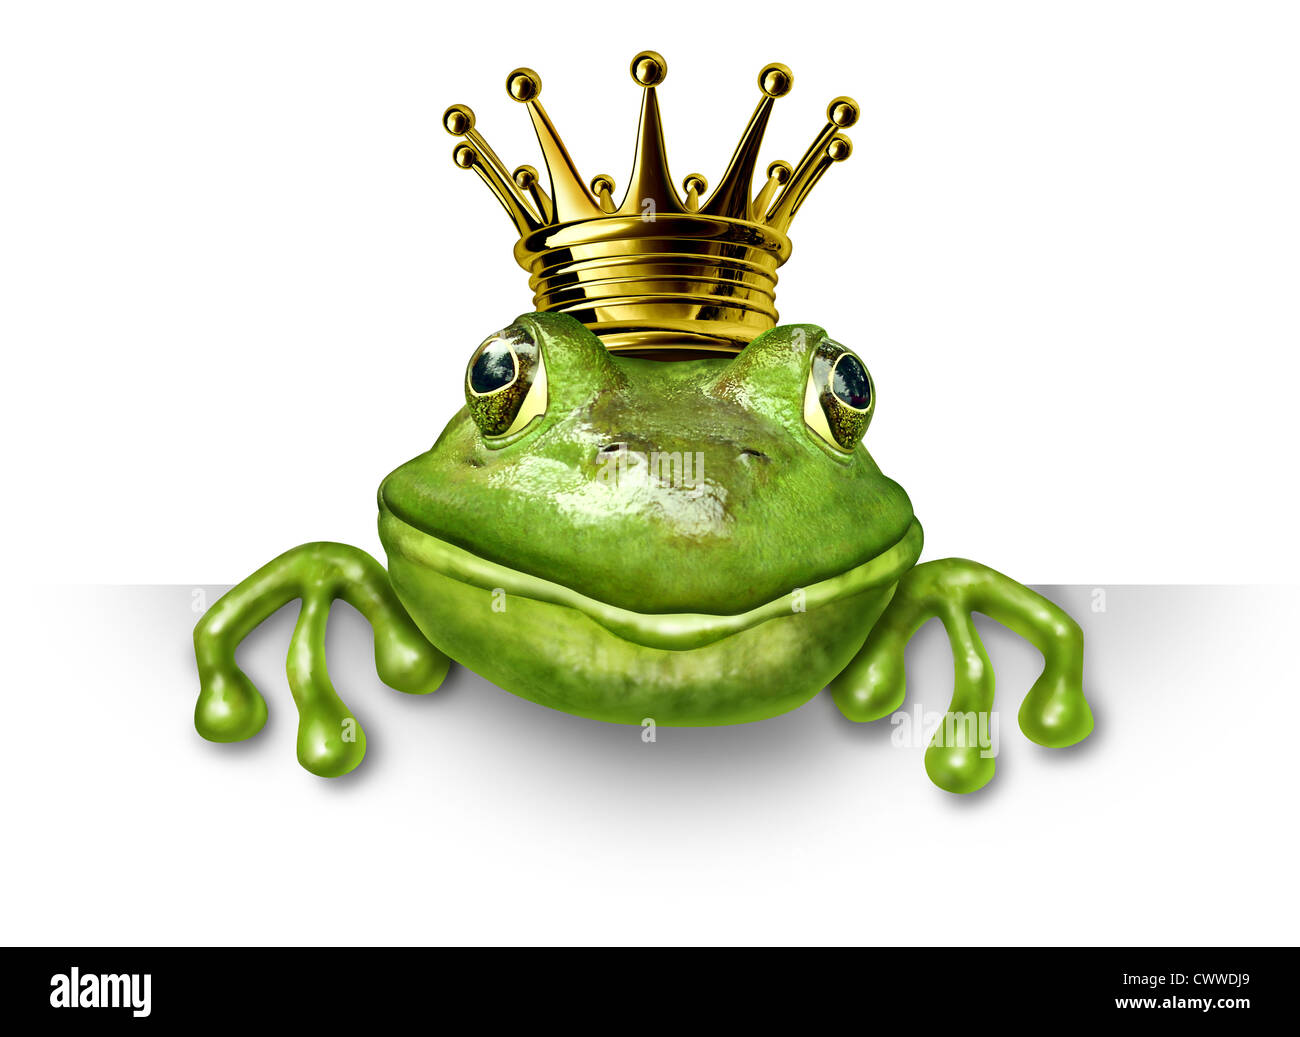 Froschkönig mit kleinen goldenen Krone mit einem leeren Schild stellvertretend für das Märchen-Konzept der Veränderung und Transformation von einer Stockfoto